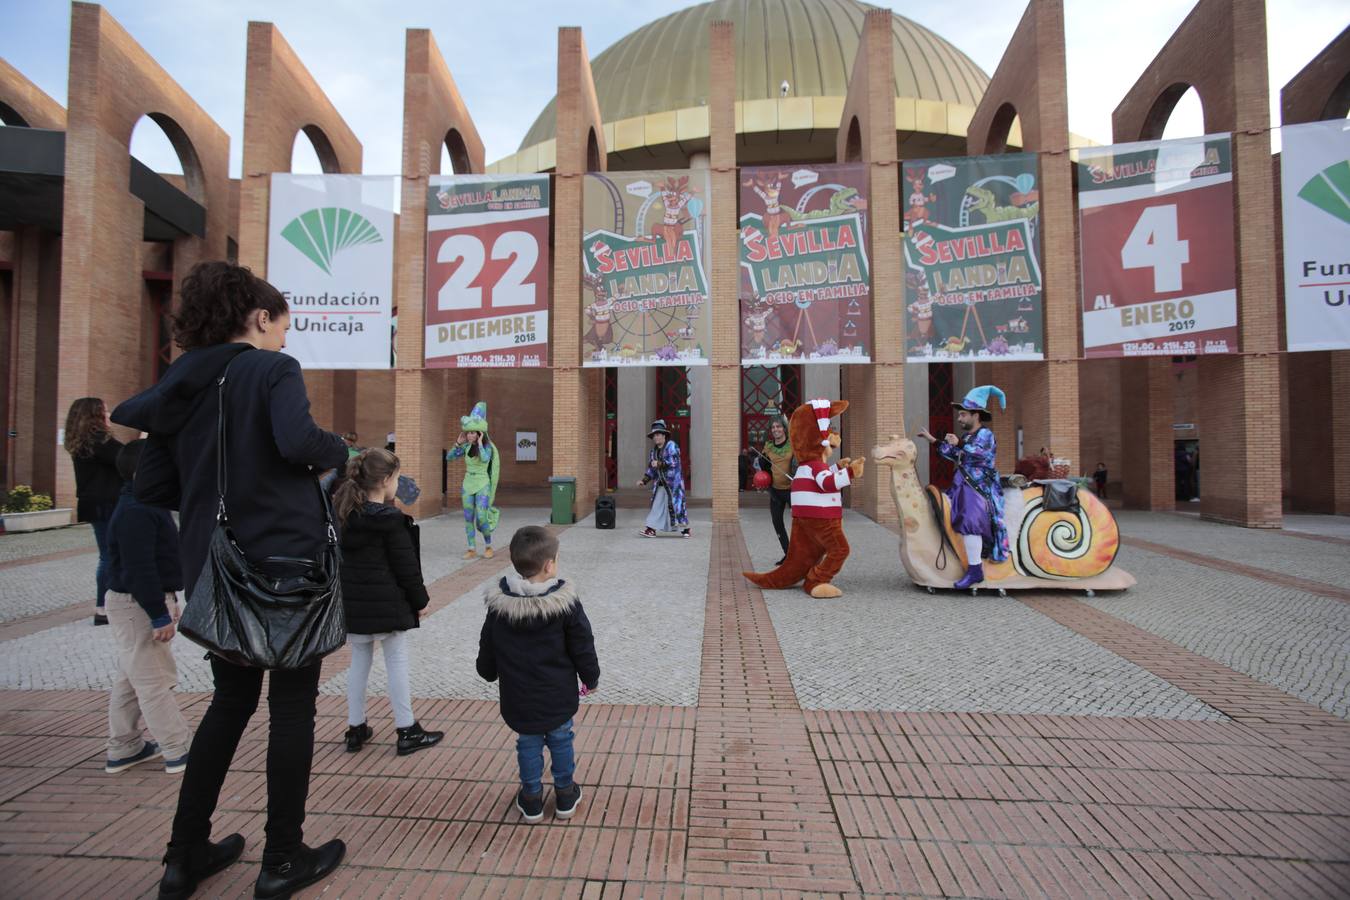 Sevillalandia abre sus puertas para recibir a 40.000 visitantes